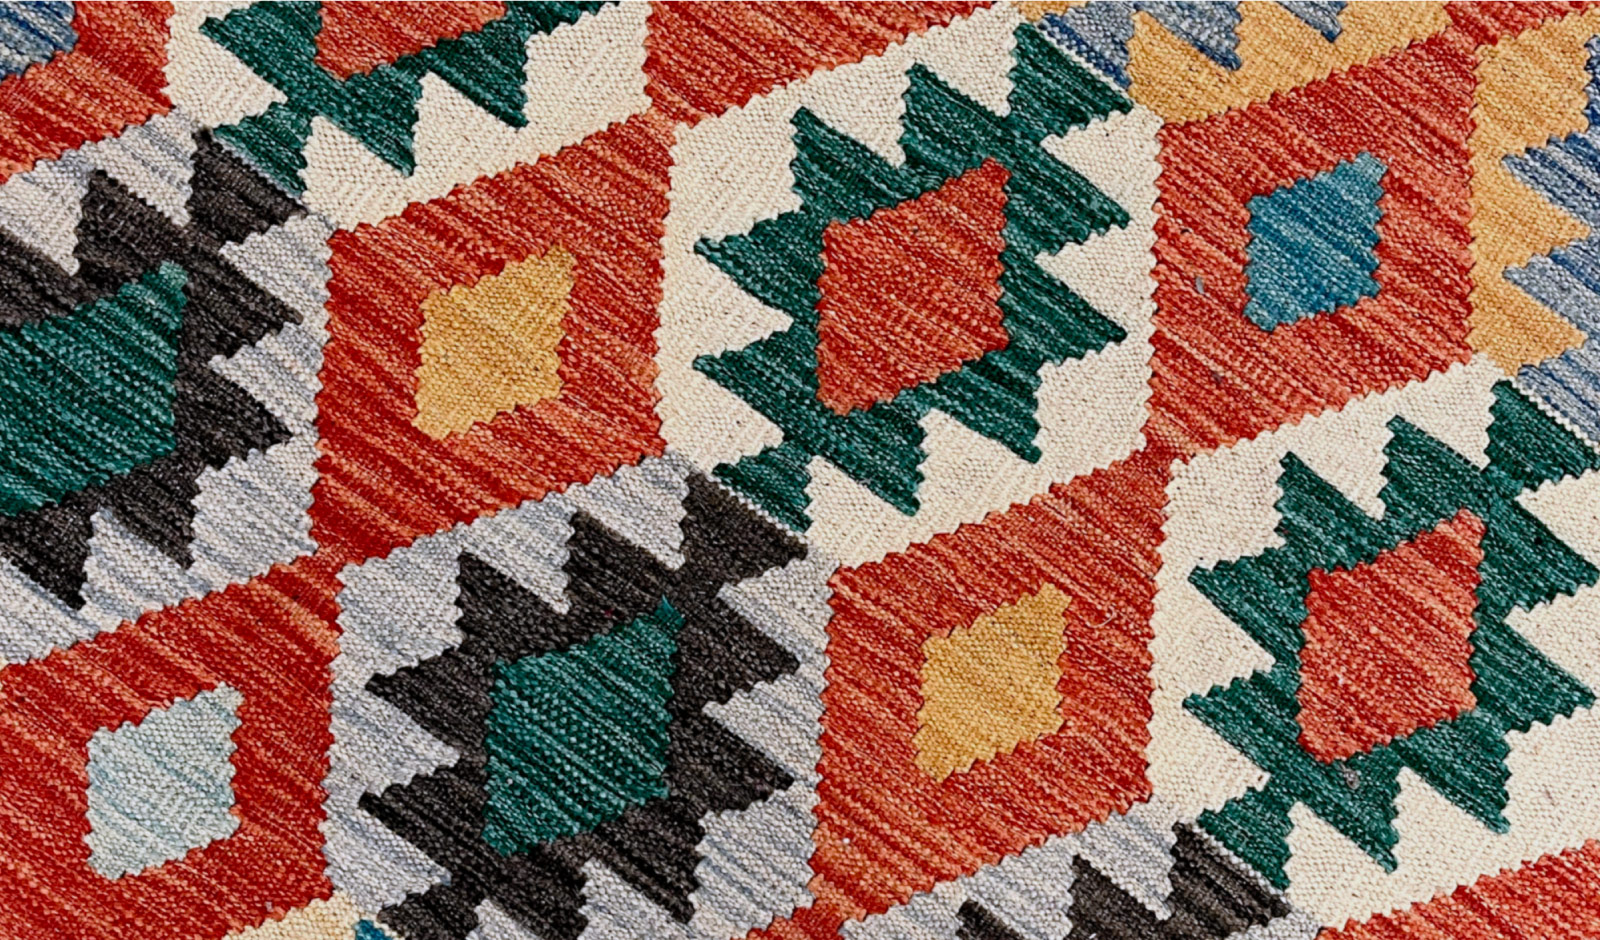 A hand-woven kilim